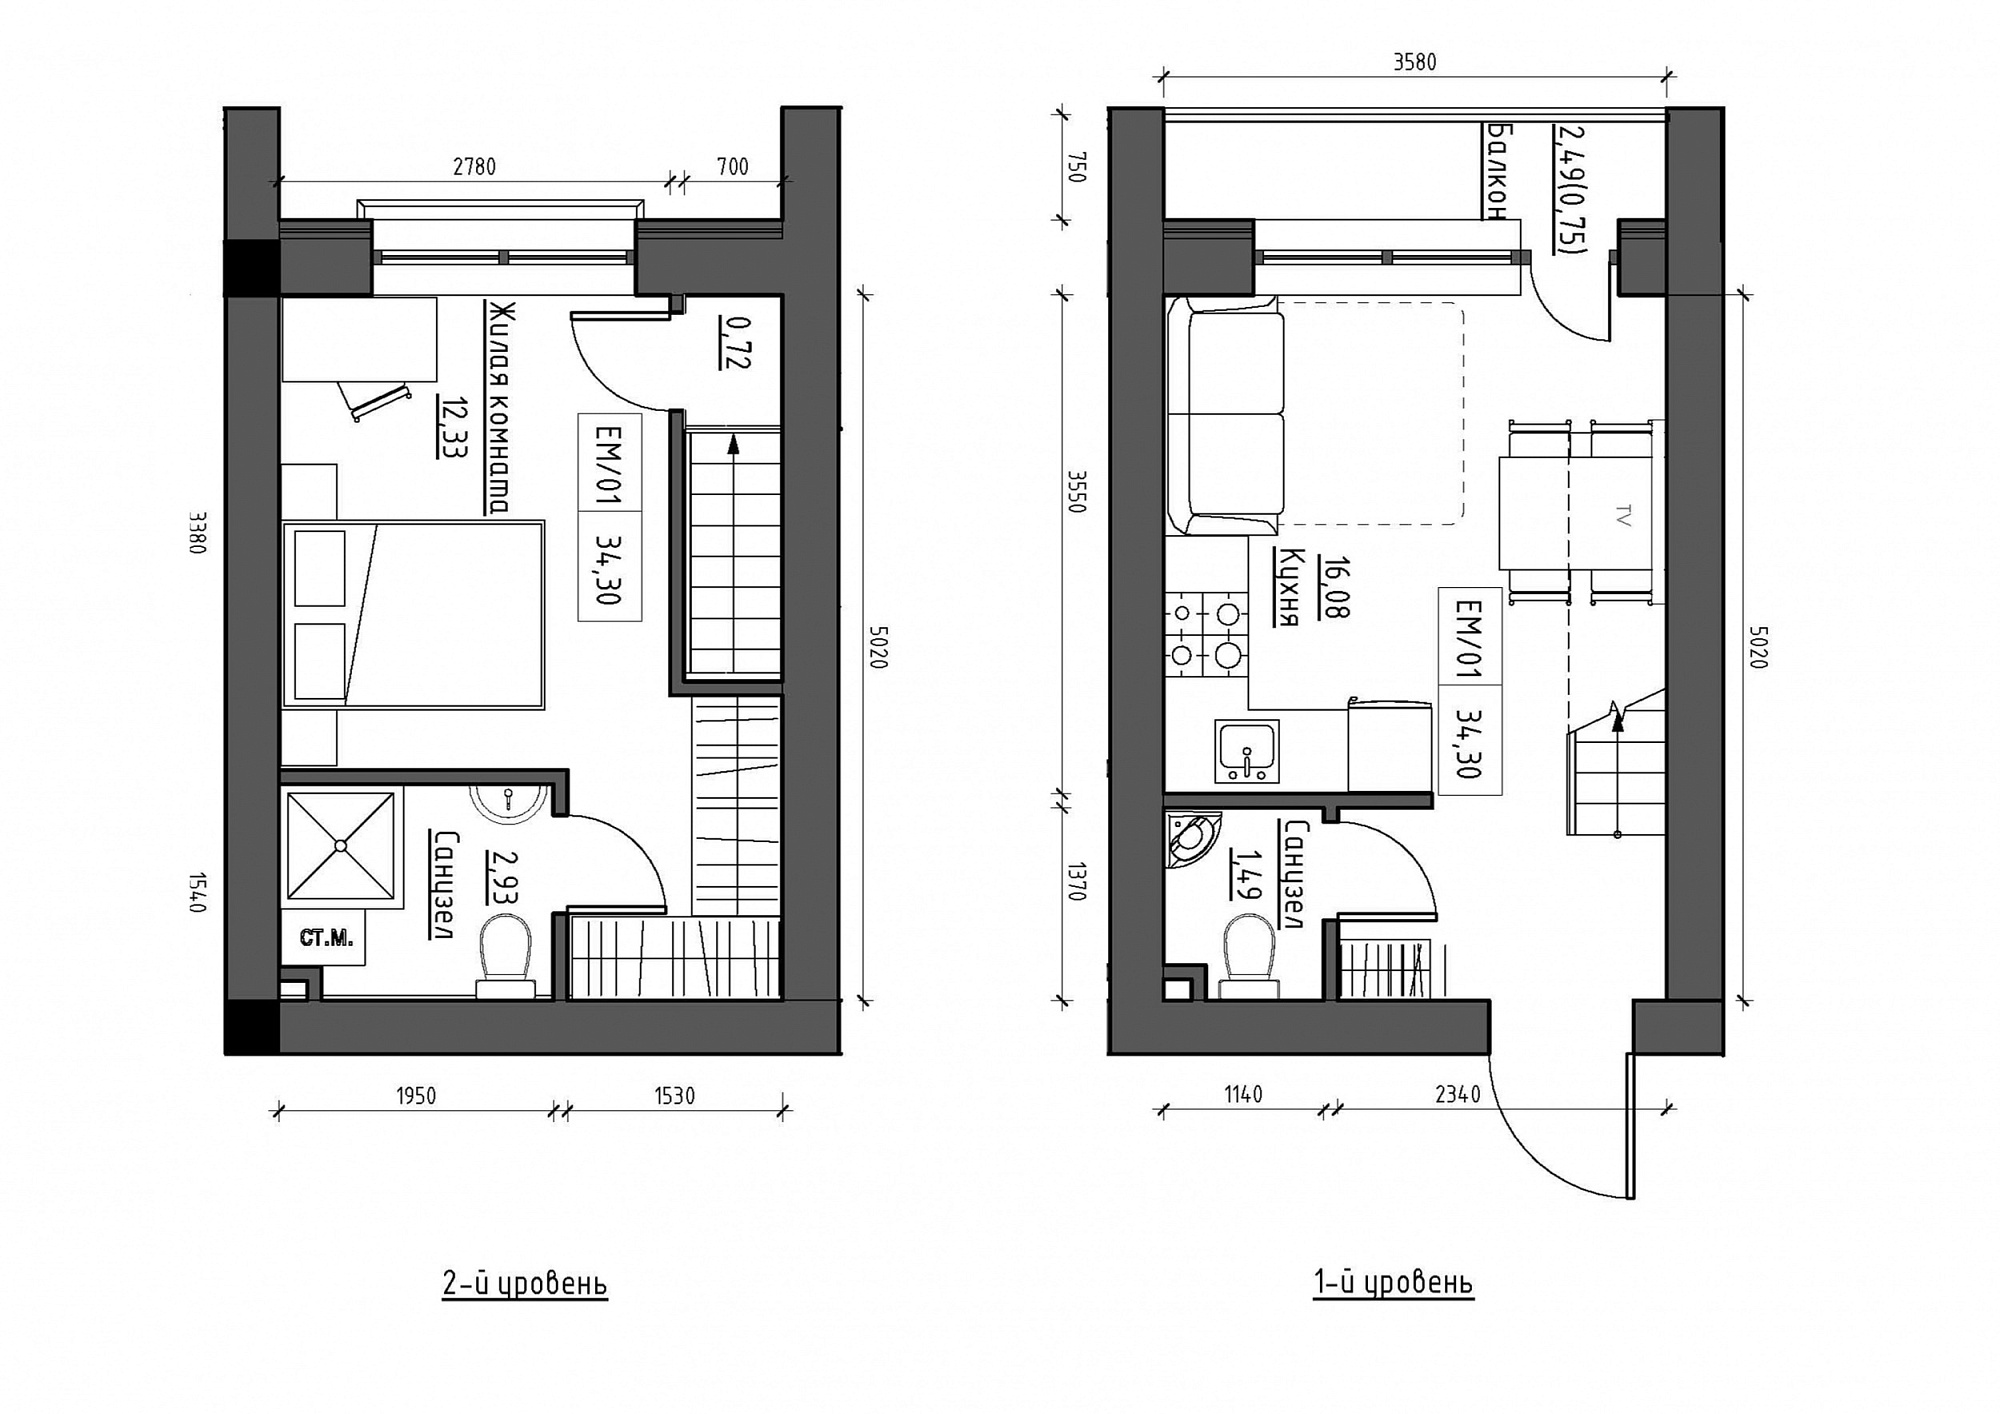 Planning 2-lvl flats area 34.3m2, KS-012-05/0012.